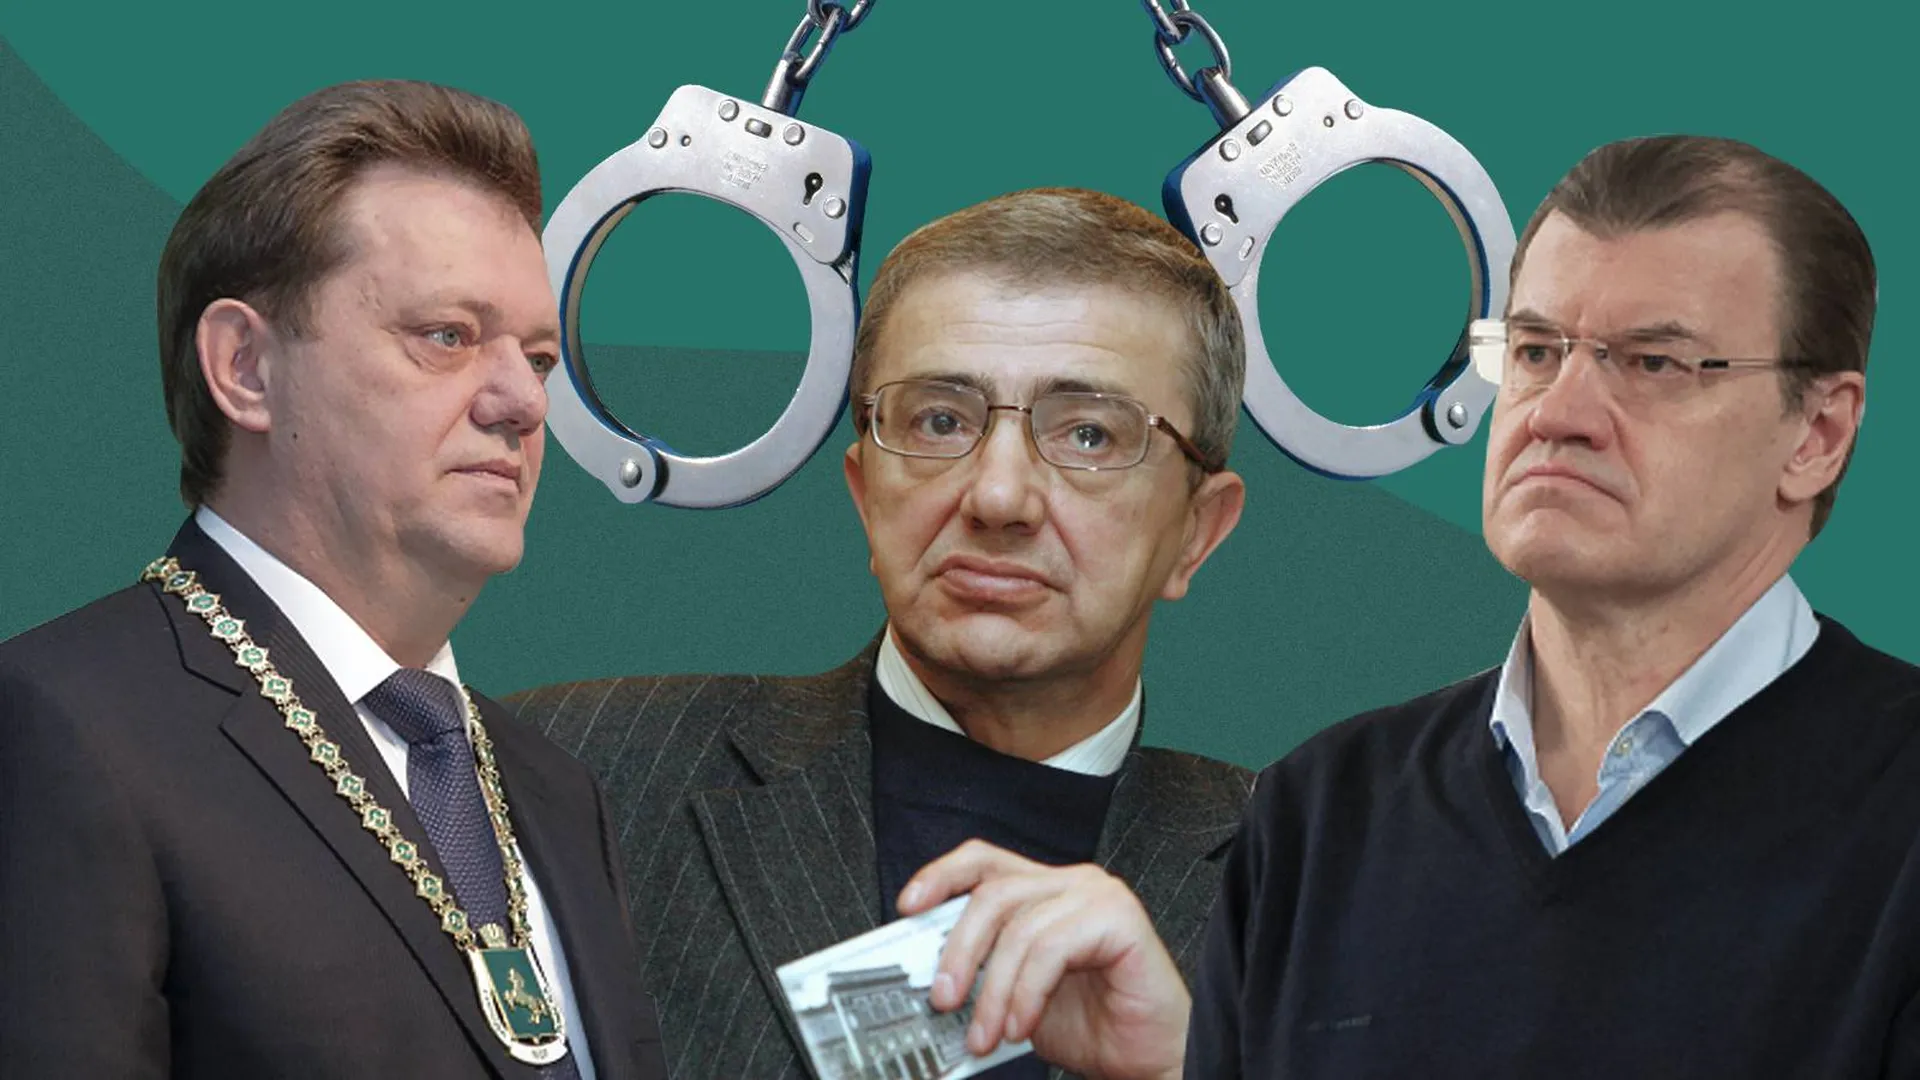 Третьего мэра Томска могут посадить в тюрьму. Новое дело связано с пивной компанией